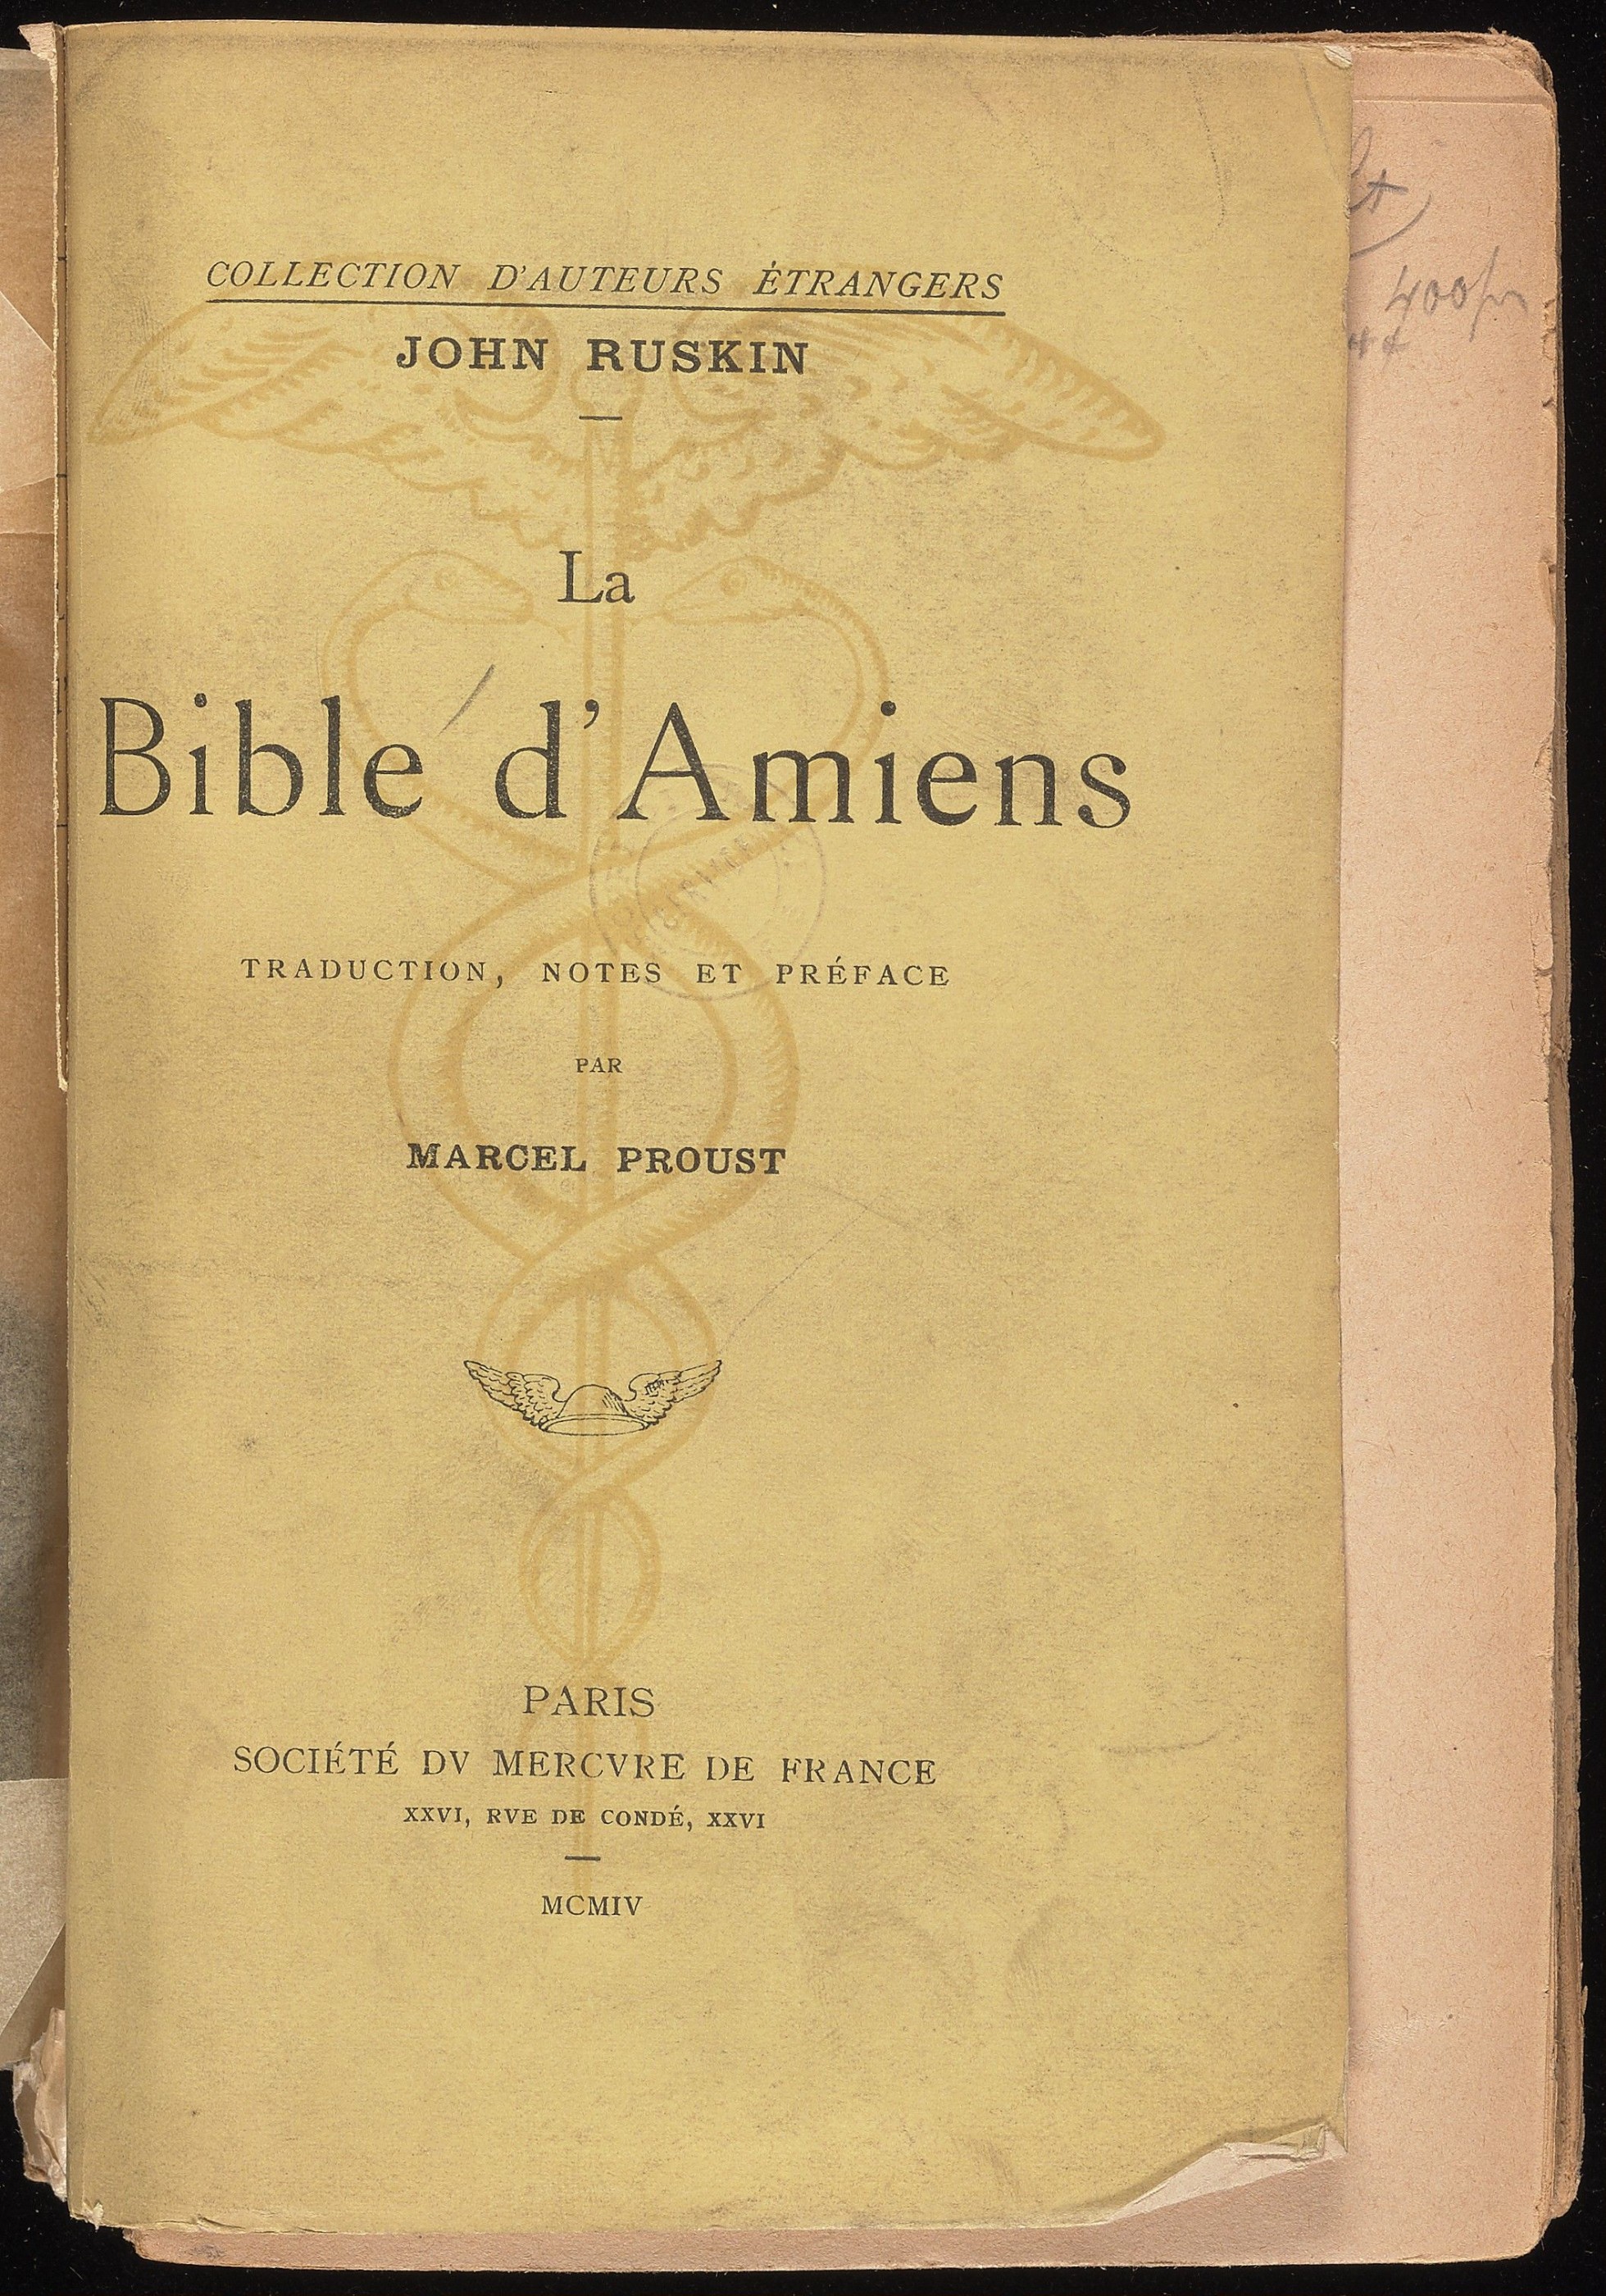 <p>John Ruskin, <em>La Bible d’Amiens</em>, trans. Marcel Proust (Paris: Société du Mercure de France, 1904). Beinecke Rare Book and Manuscript Library.</p>